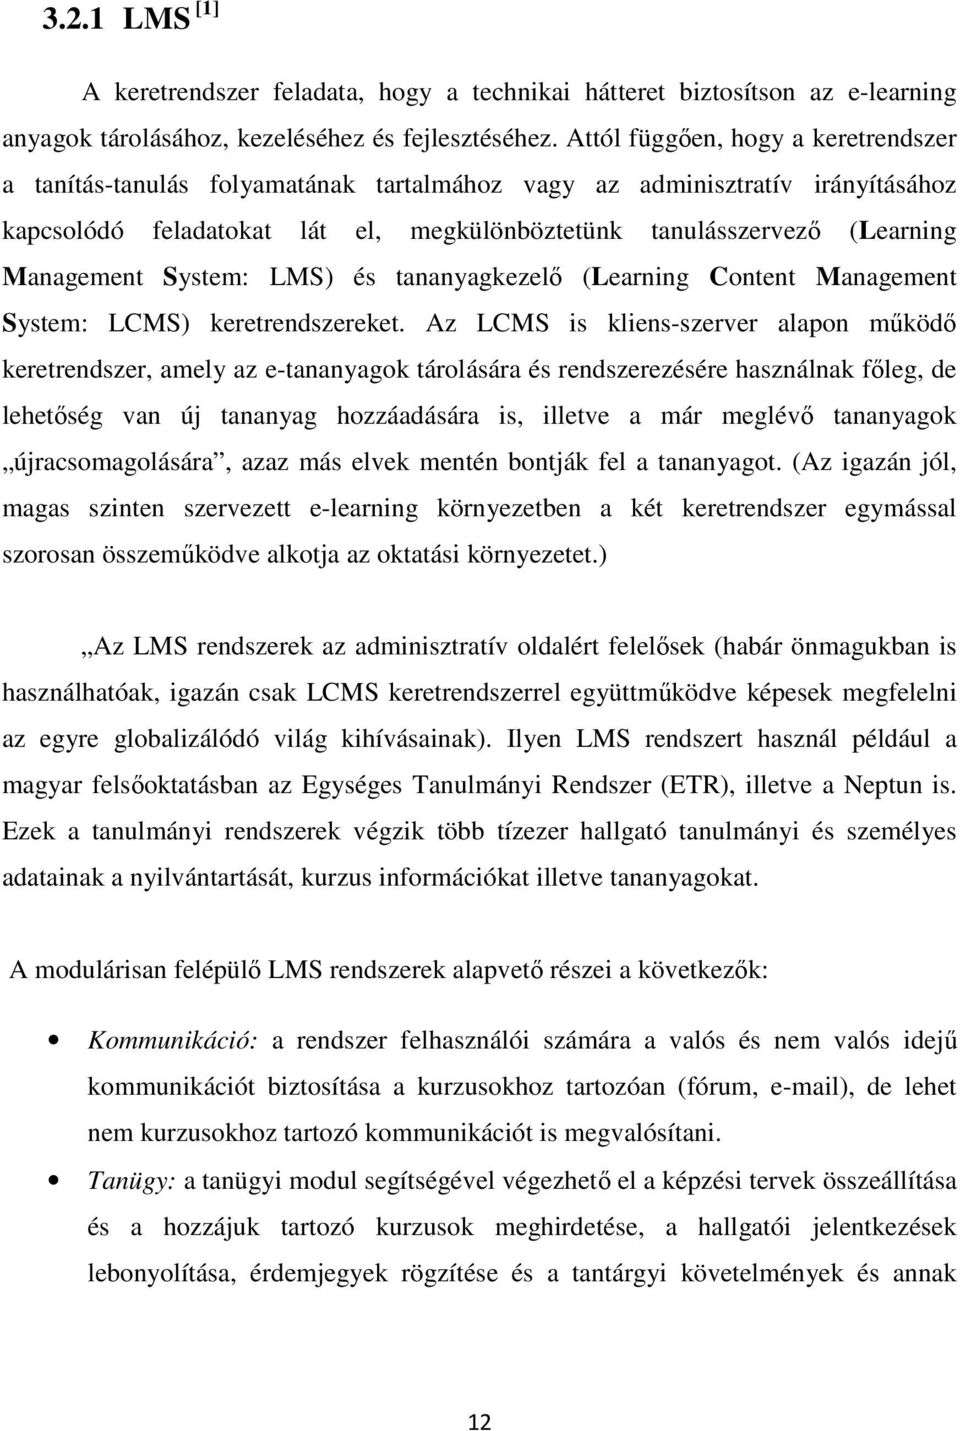 Management System: LMS) és tananyagkezelő (Learning Content Management System: LCMS) keretrendszereket.